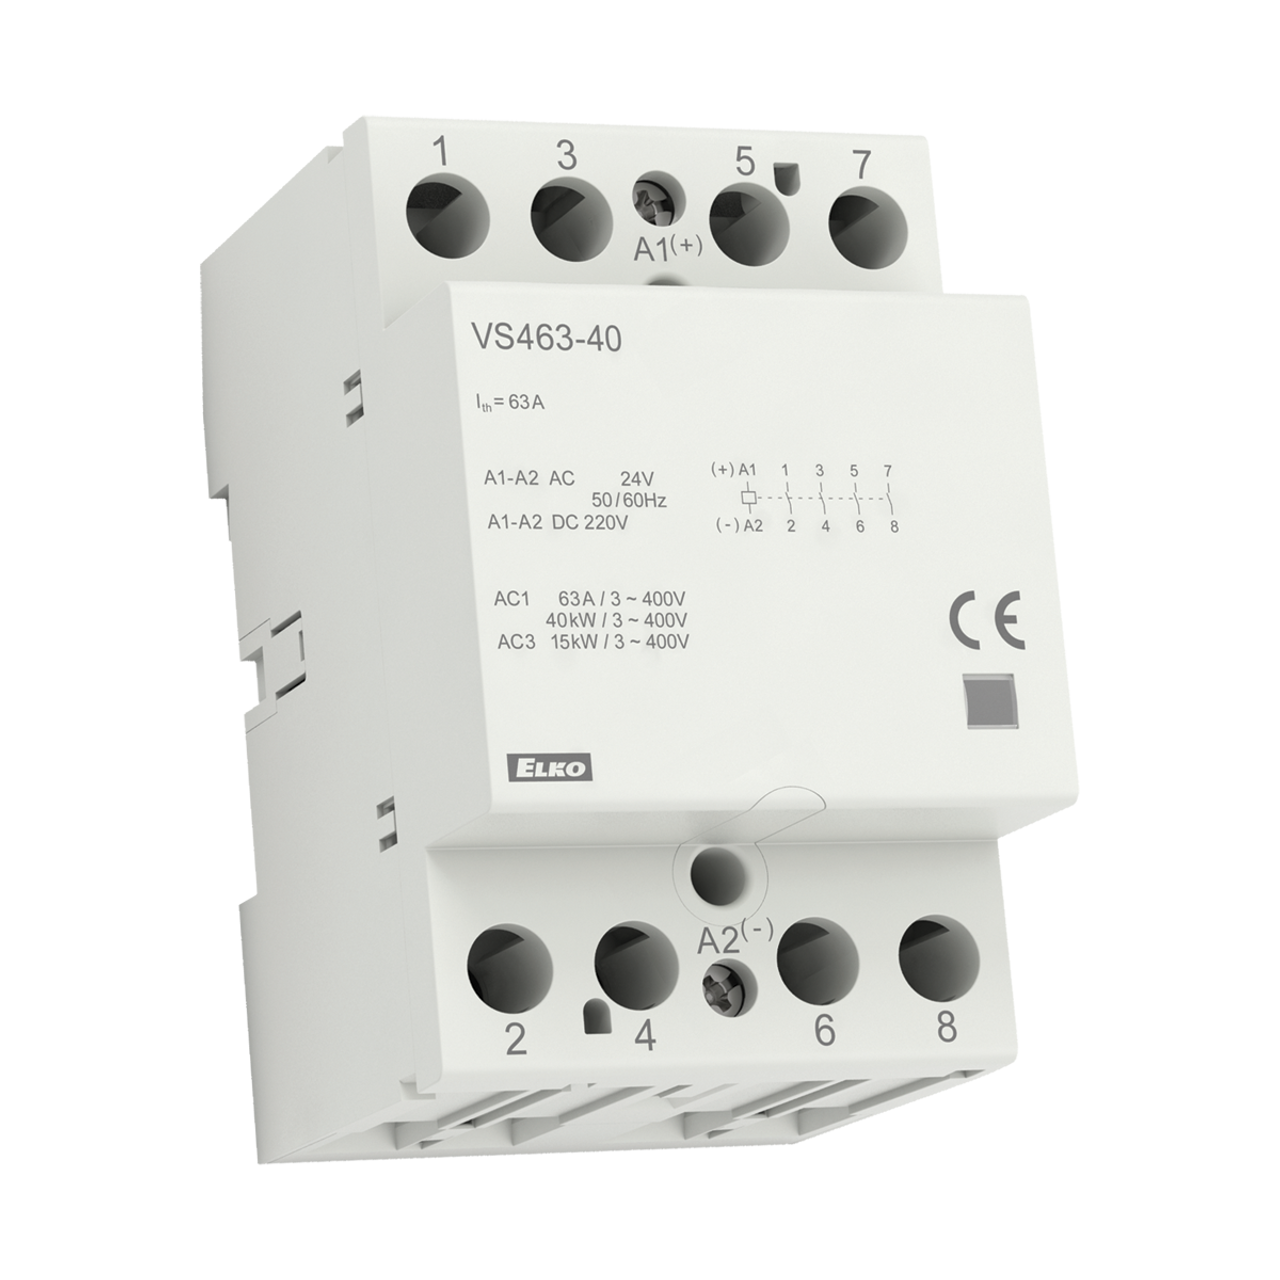 ELKP VS463-40UL 24V AC/DC Power Contactor